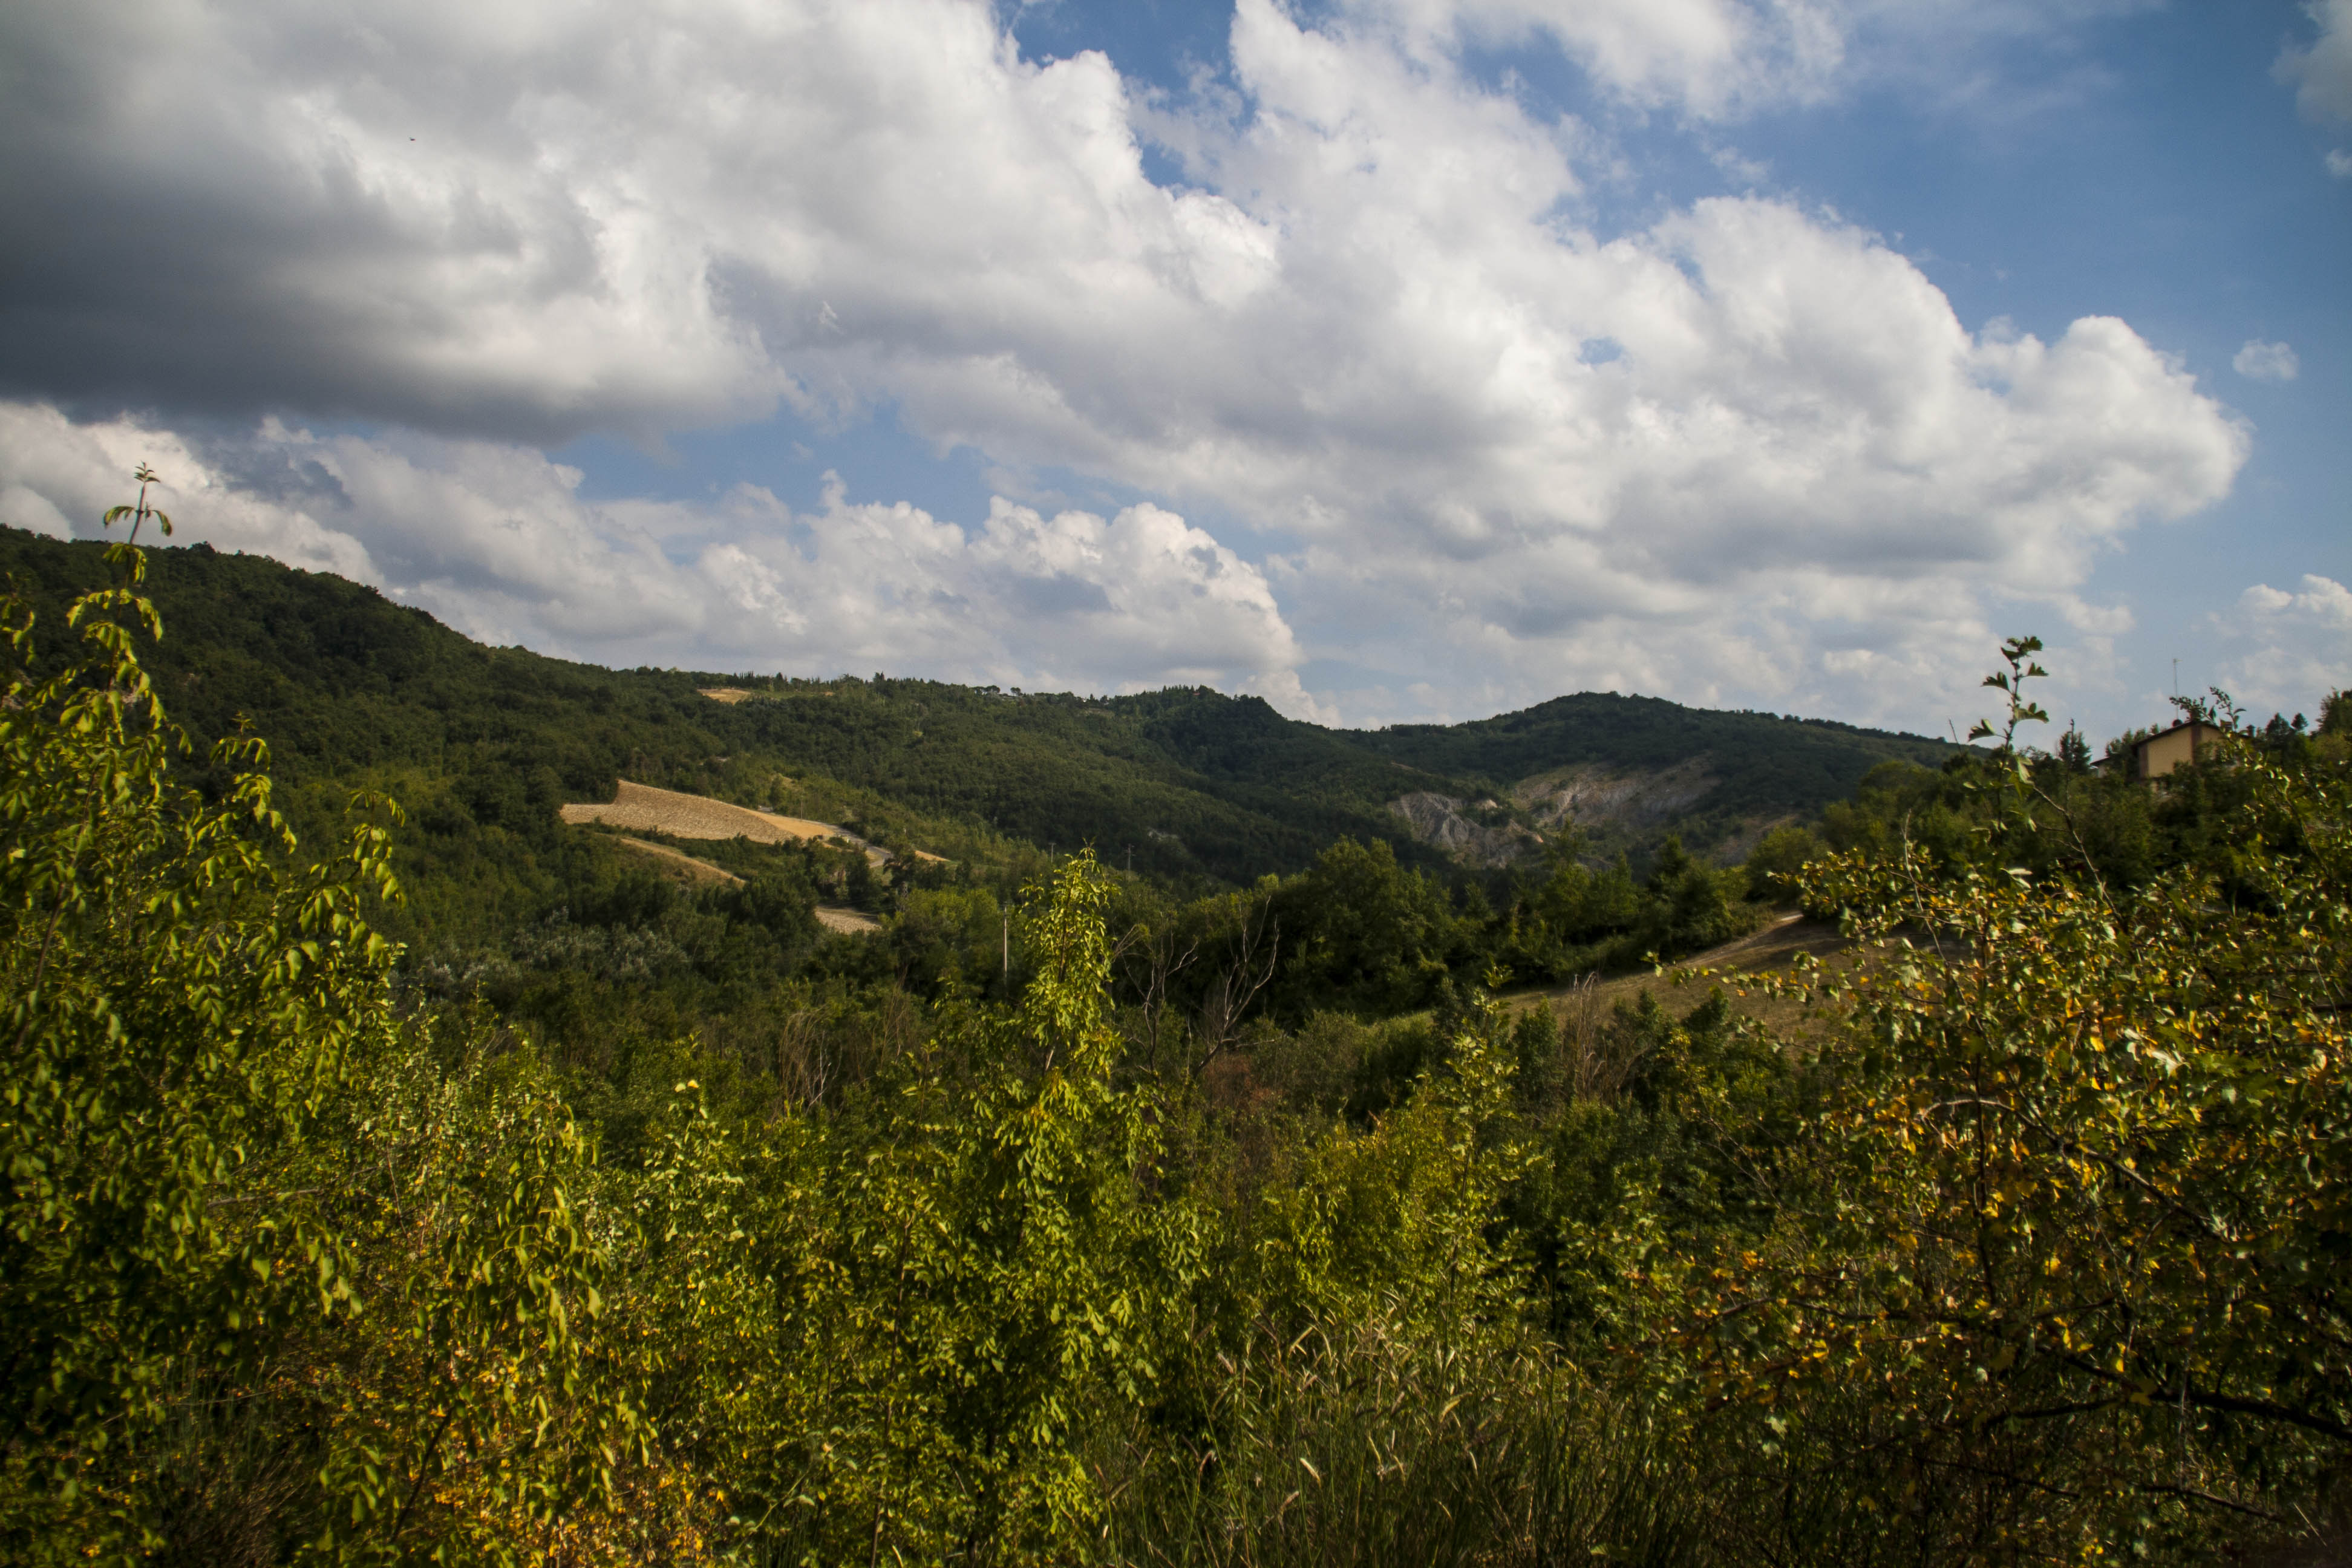 Parco dei Gessi Bolognesi e Calanche dell'Abbadessa (Bo) Natura Panorama HDR 